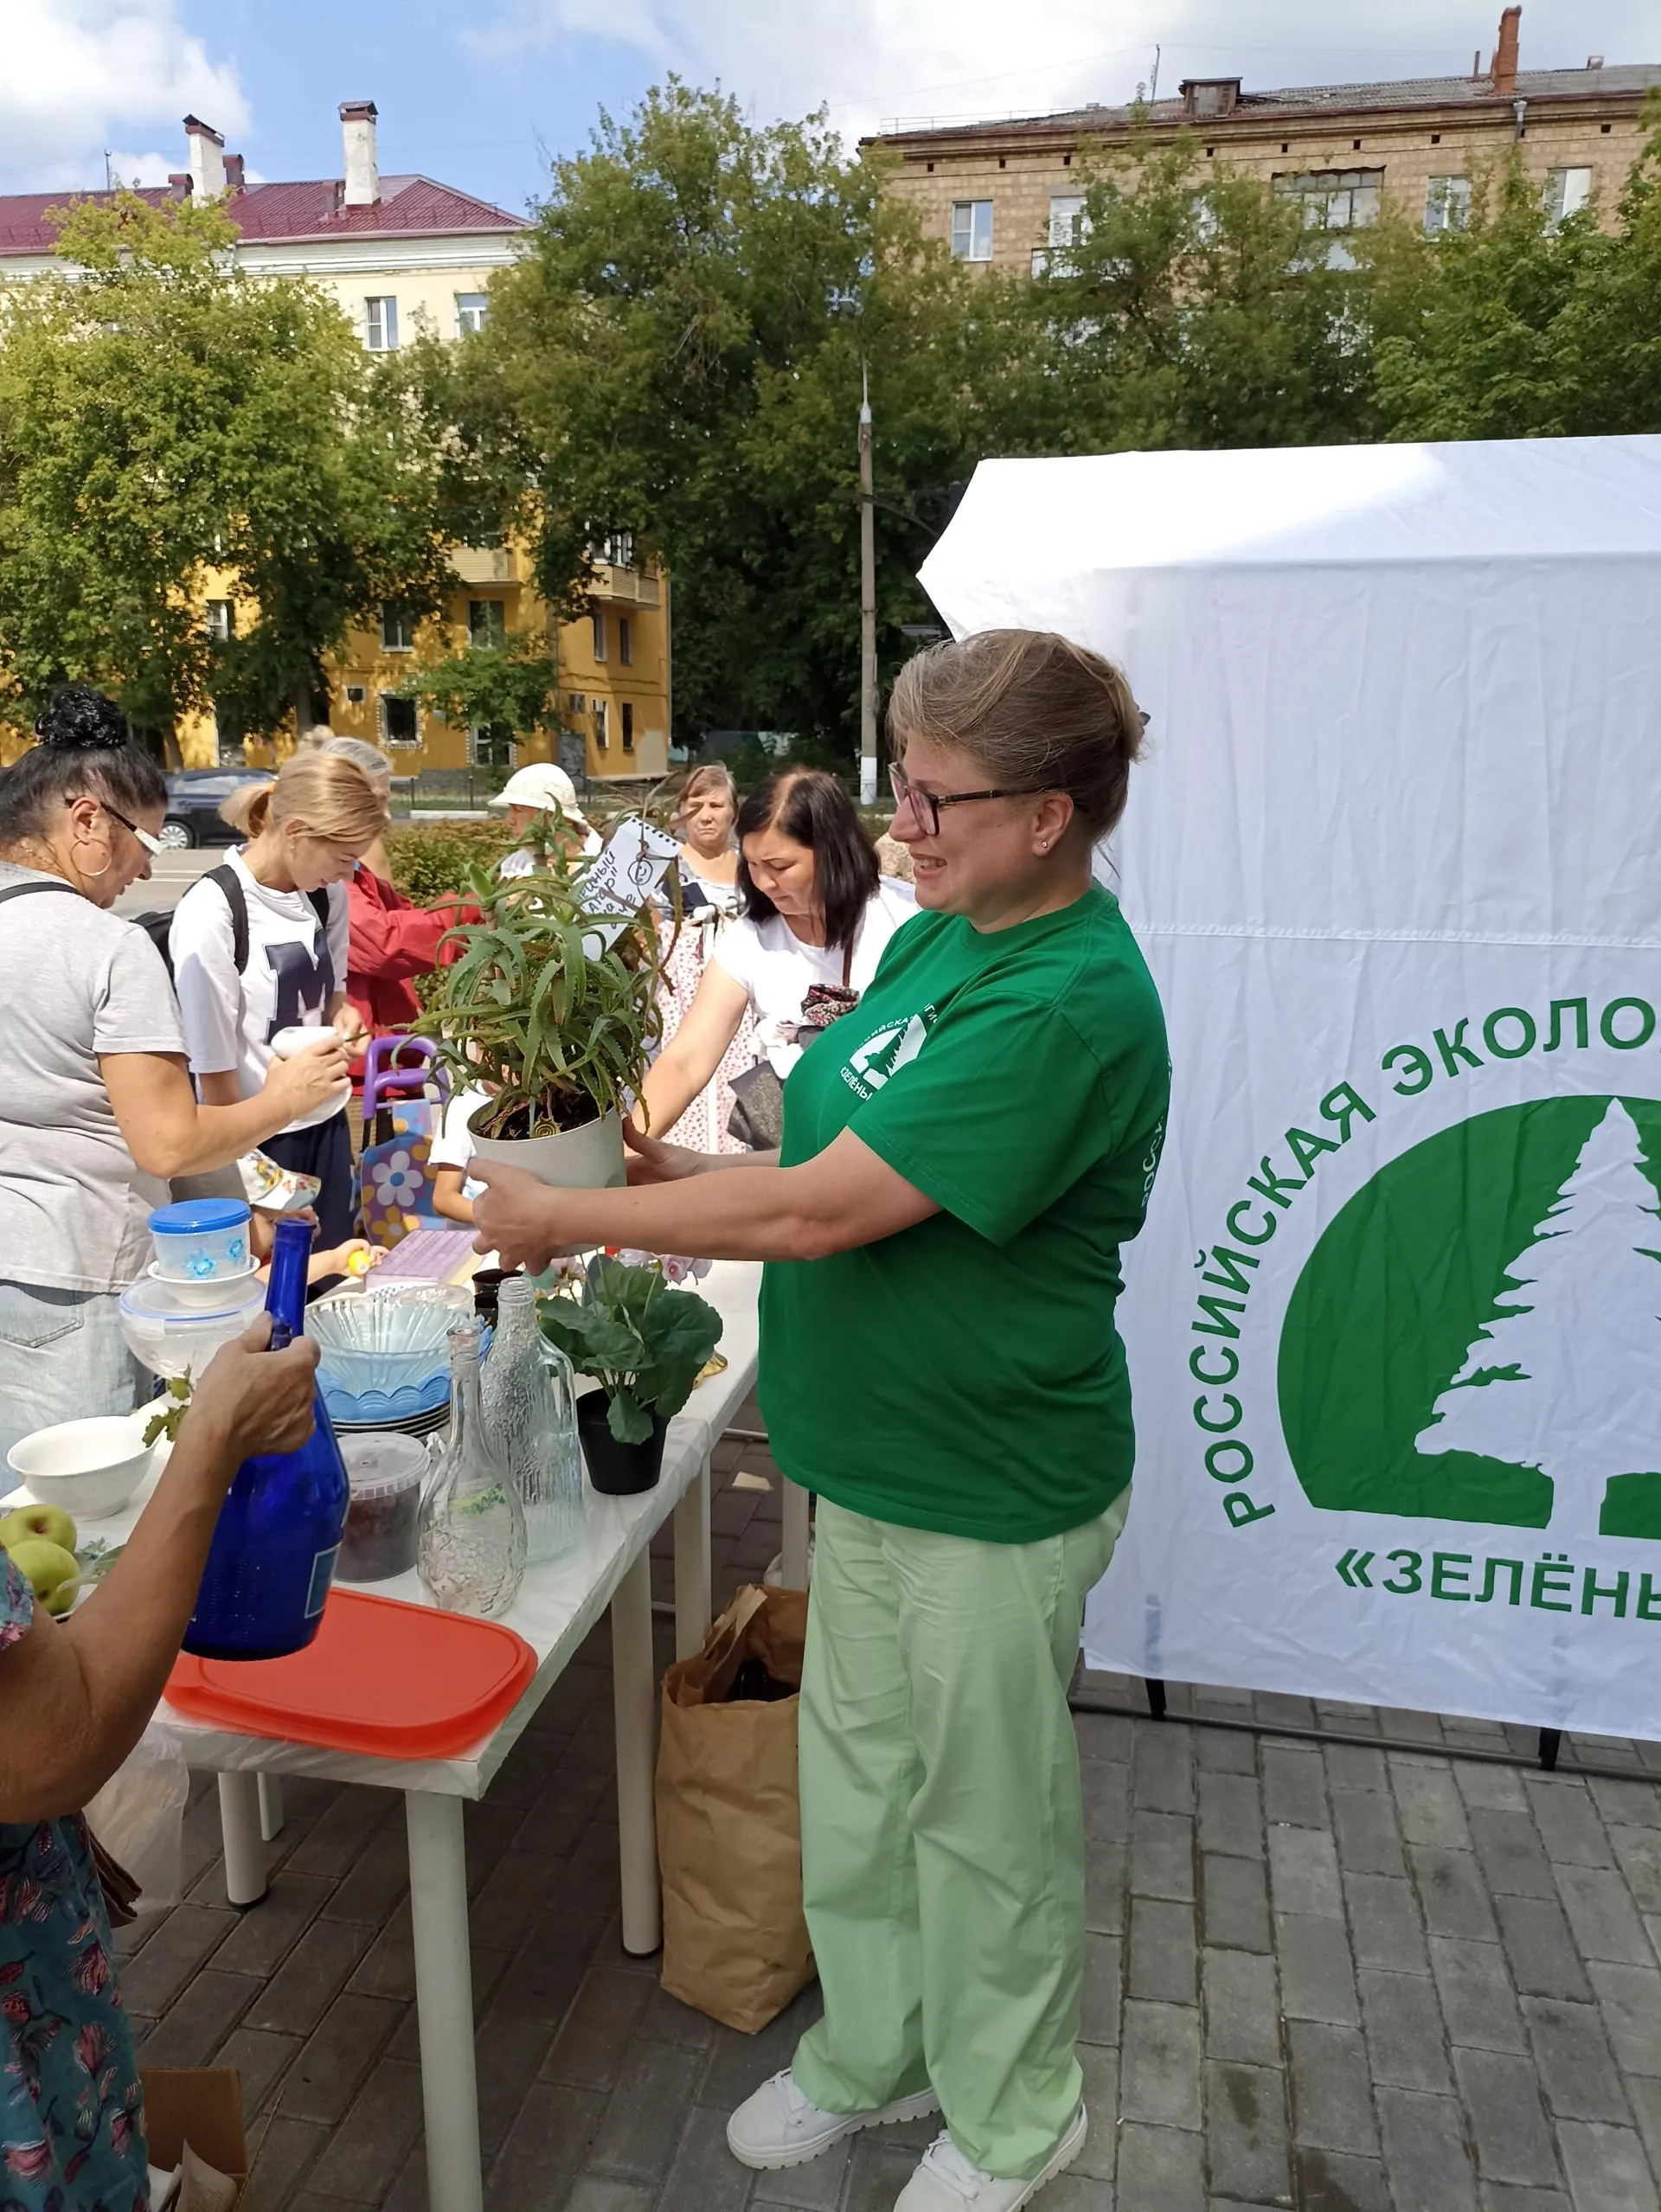 Отделение российской экологической партии «Зеленые»